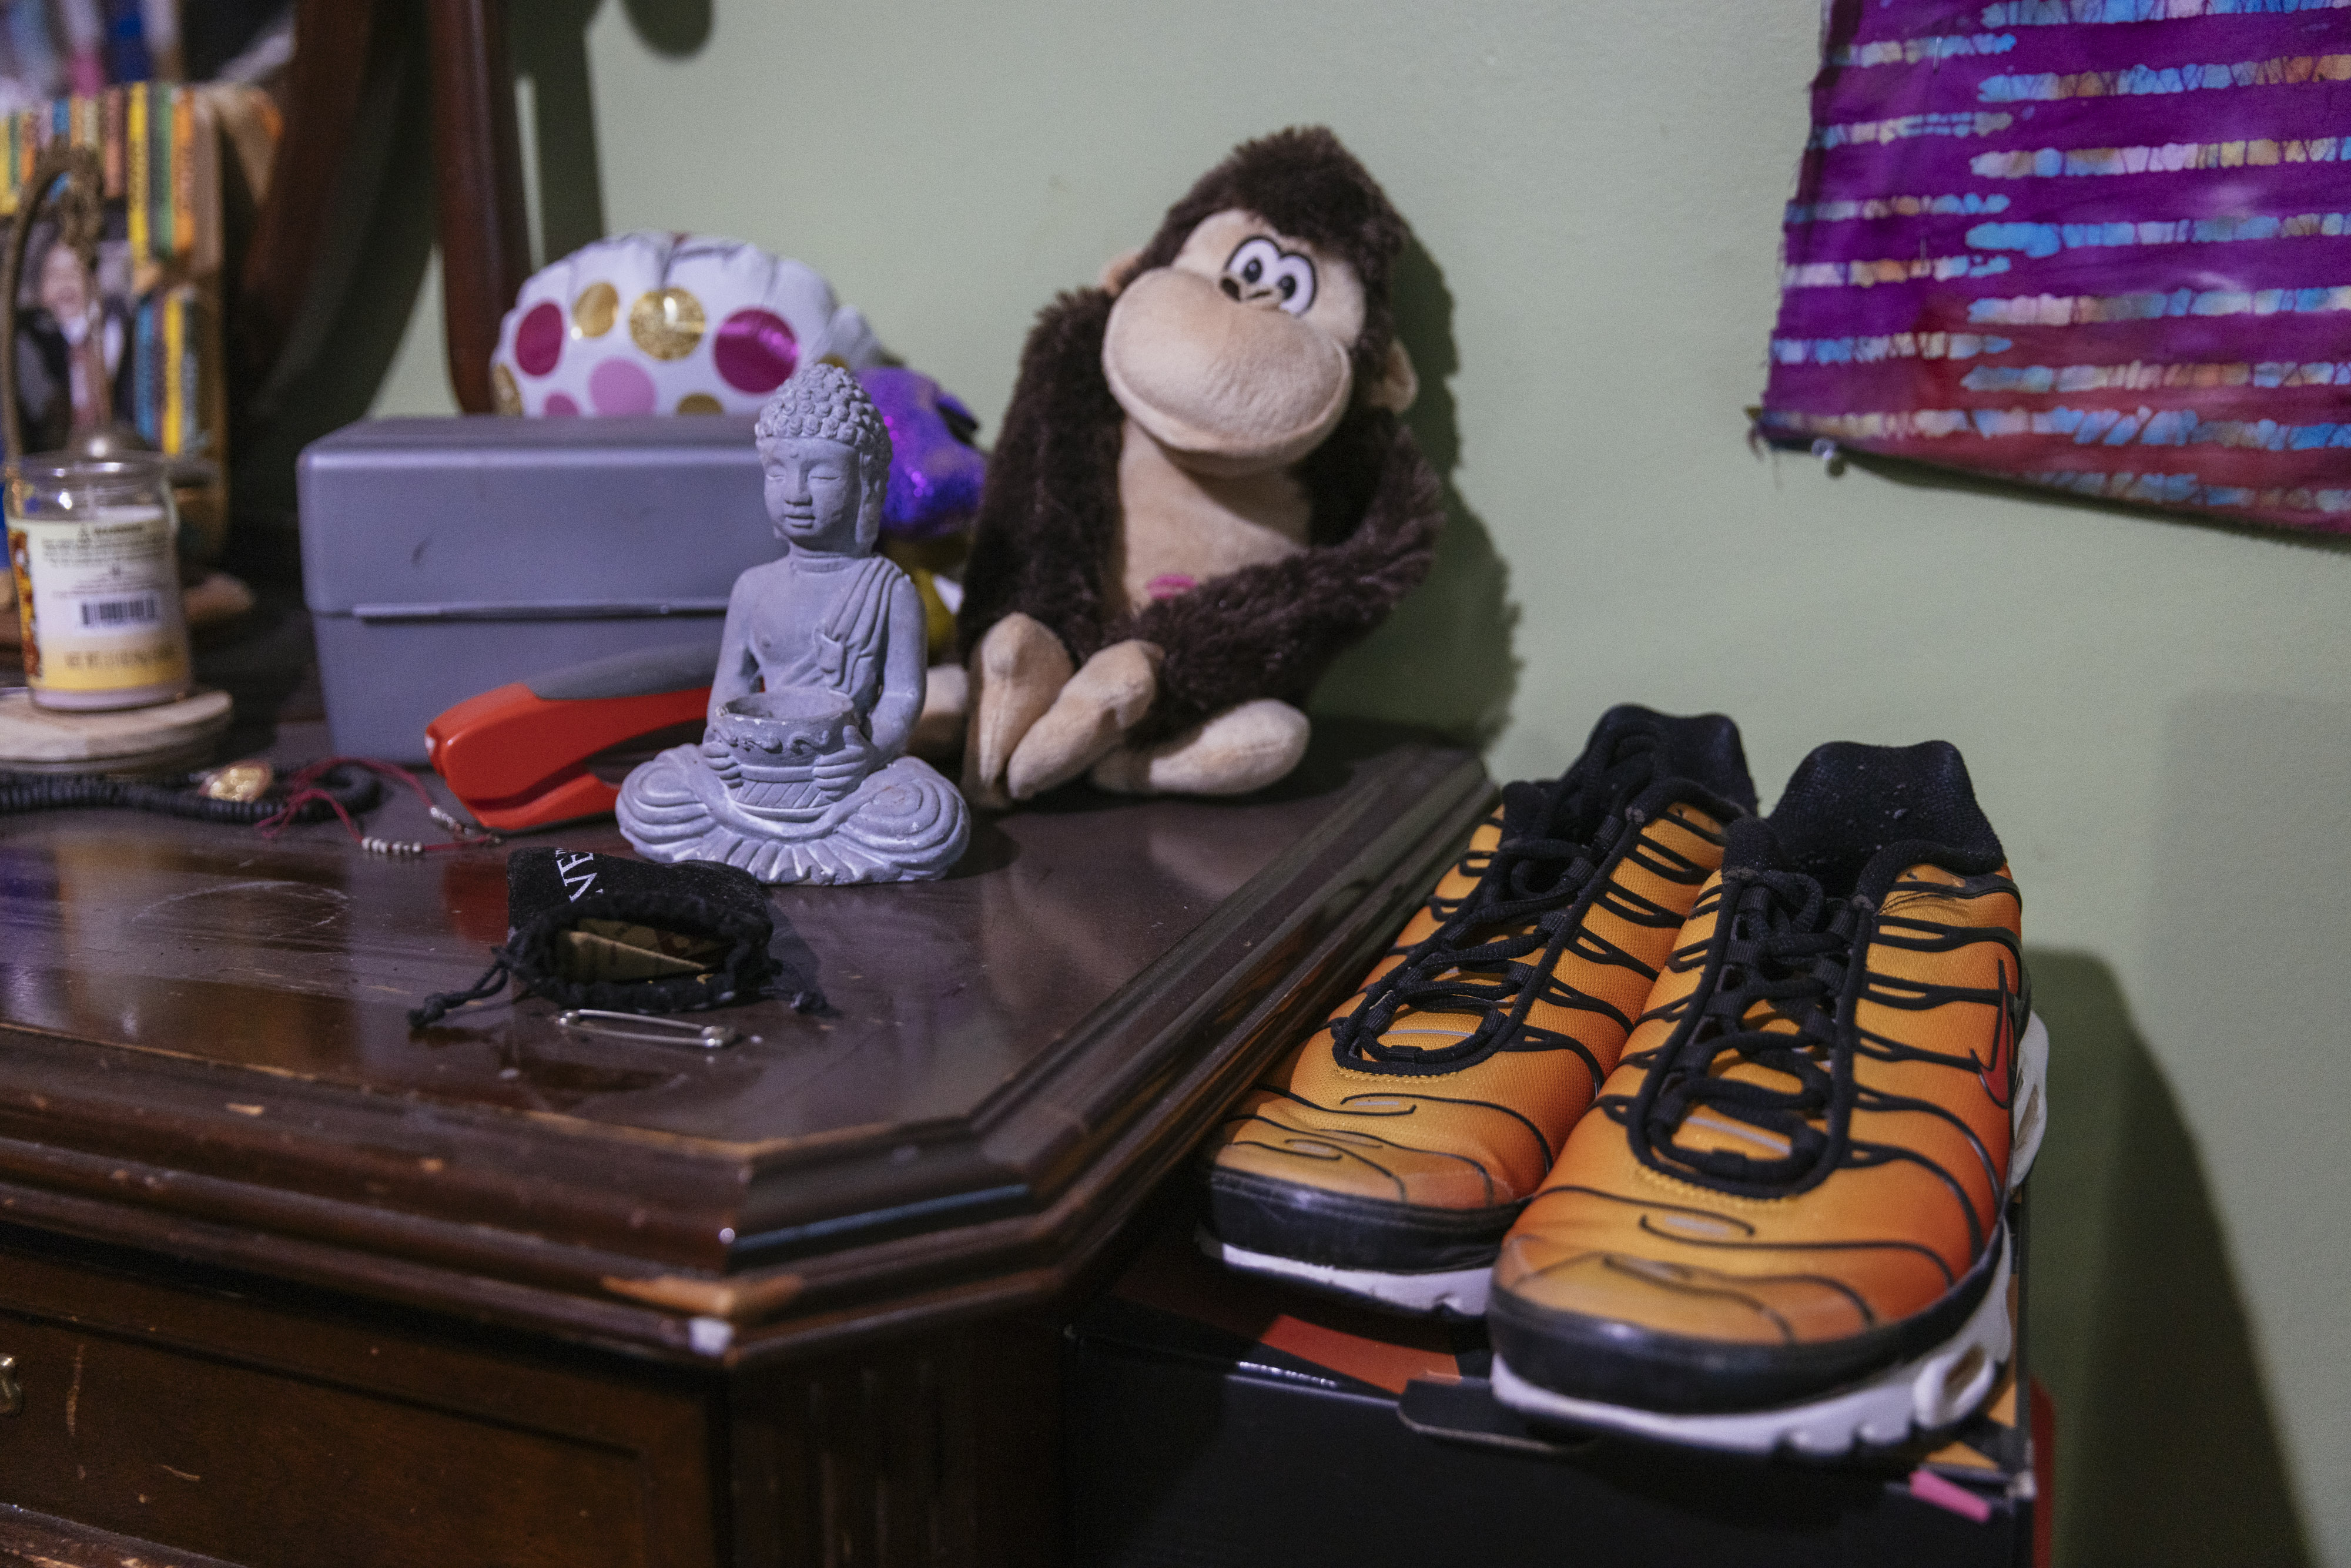 Jamal Clay's belongings on a dresser in his room